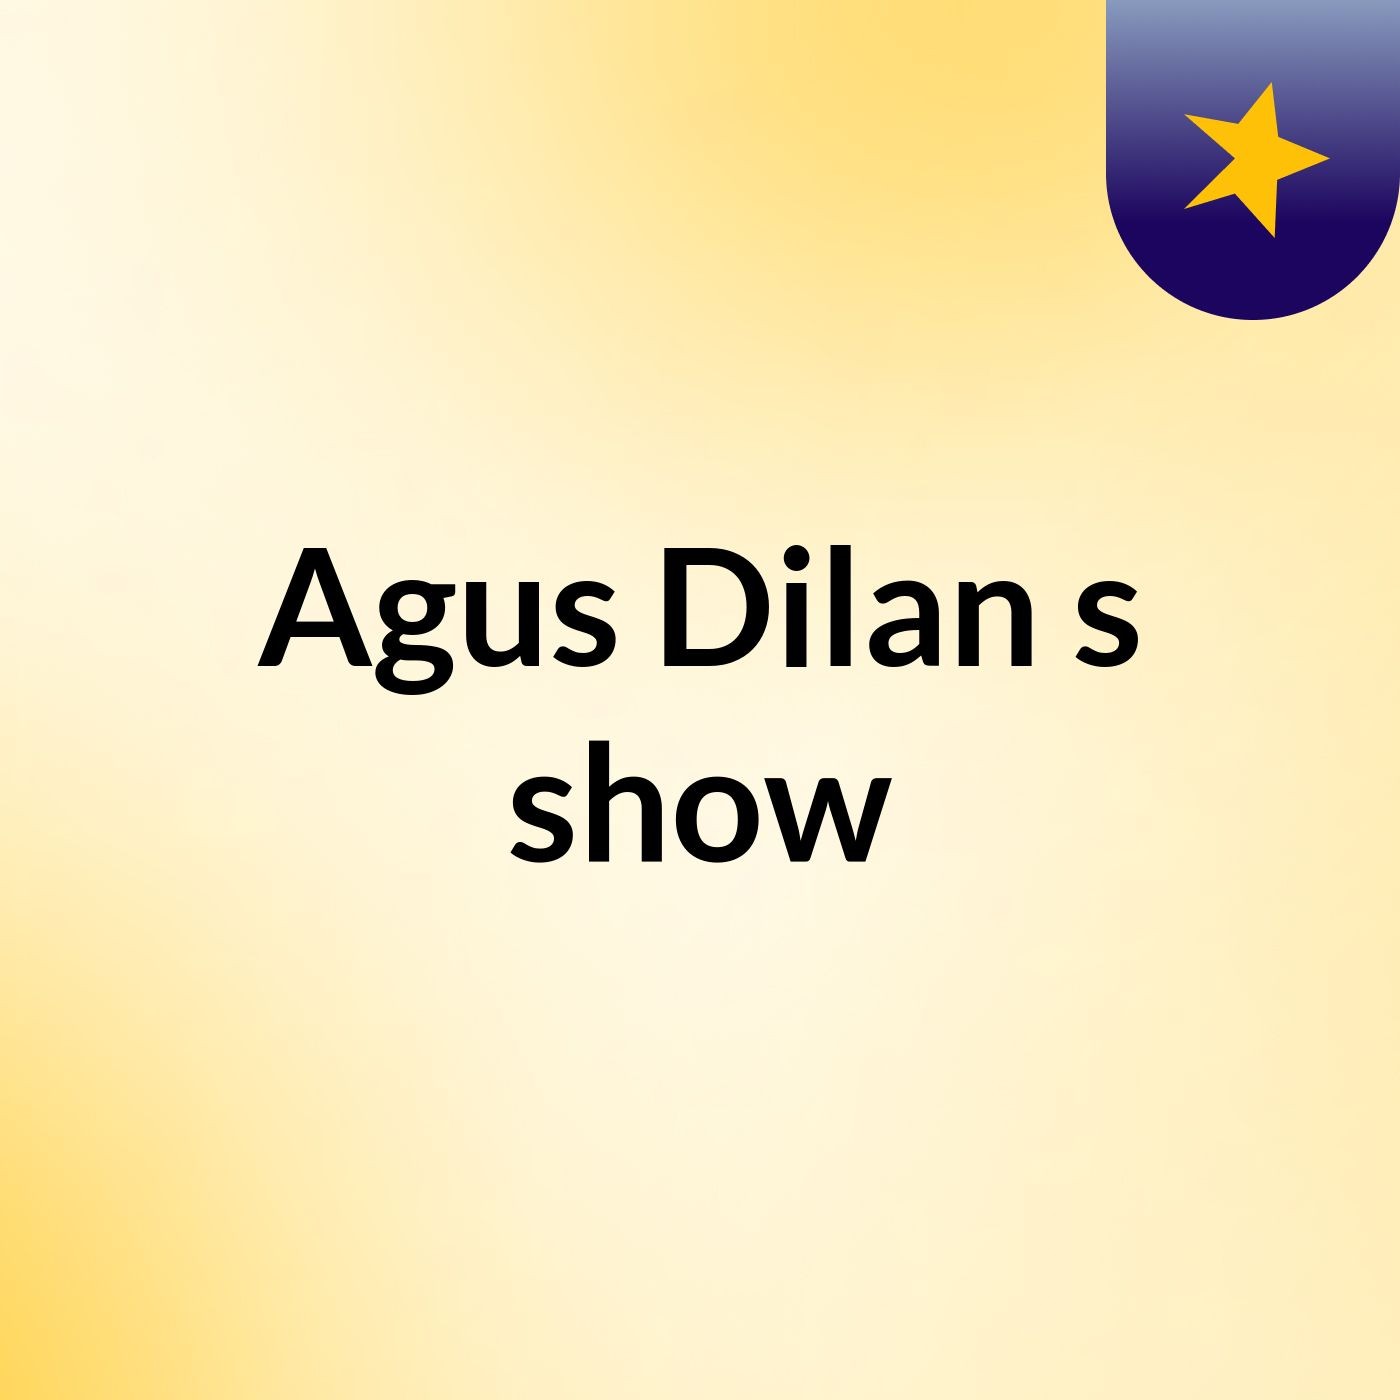 Agus Dilan's show